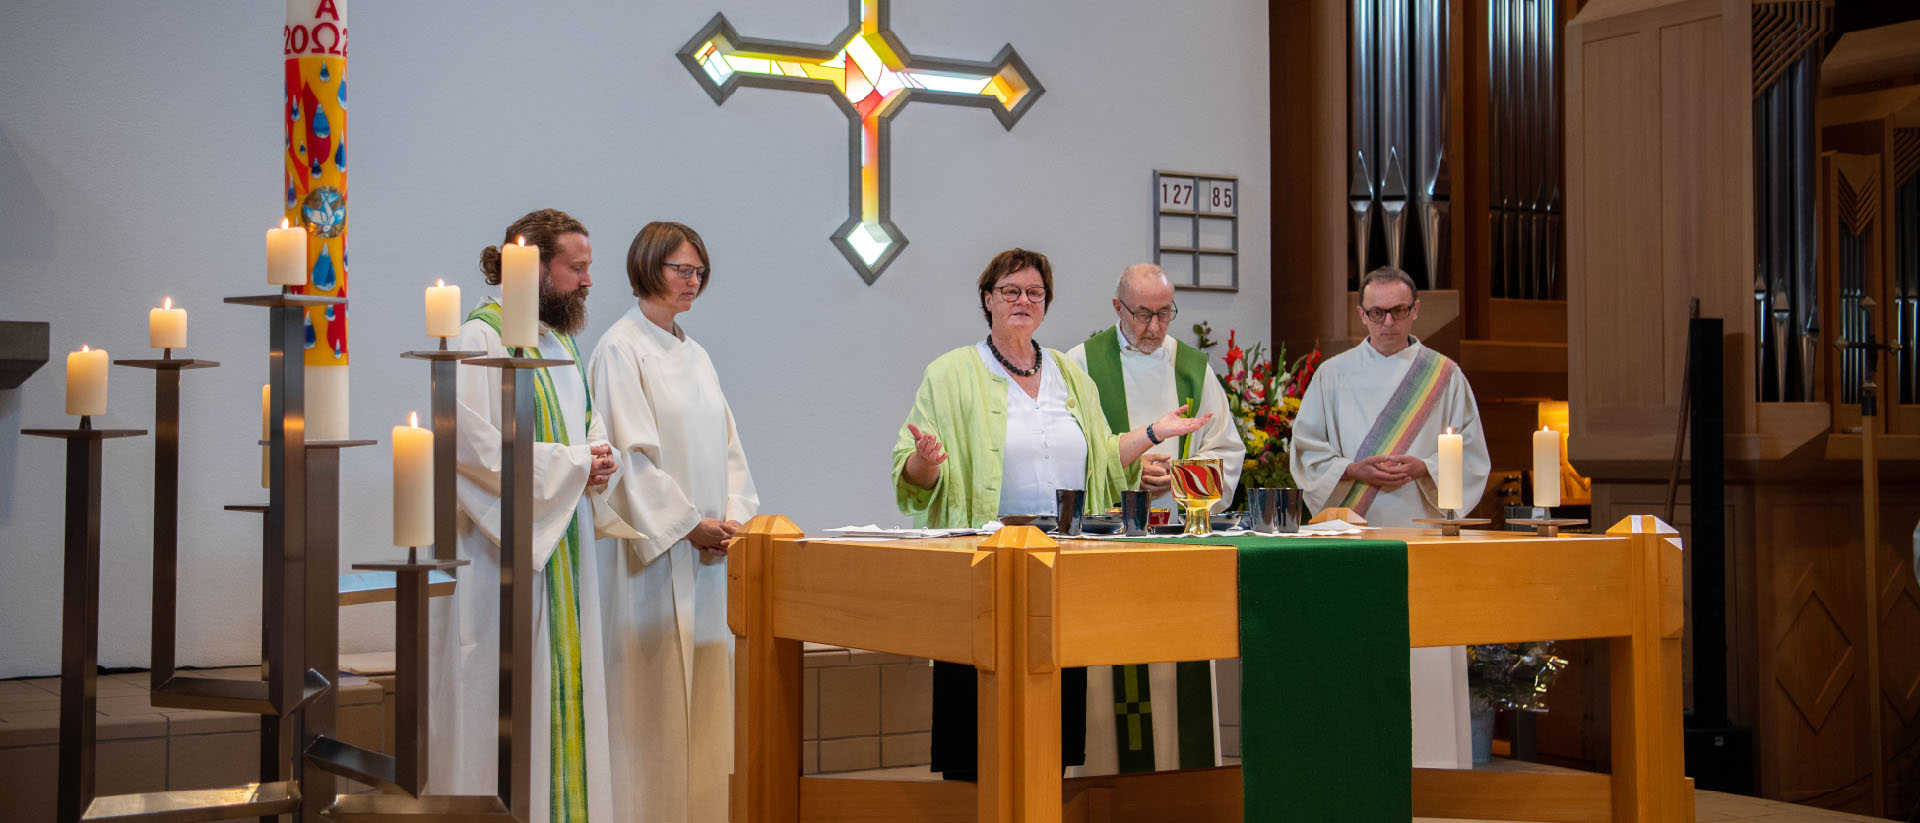 Corinne Schmid a concélébré une messe, entourée de deux prêtres et d'un diacre | © Seraina Boner